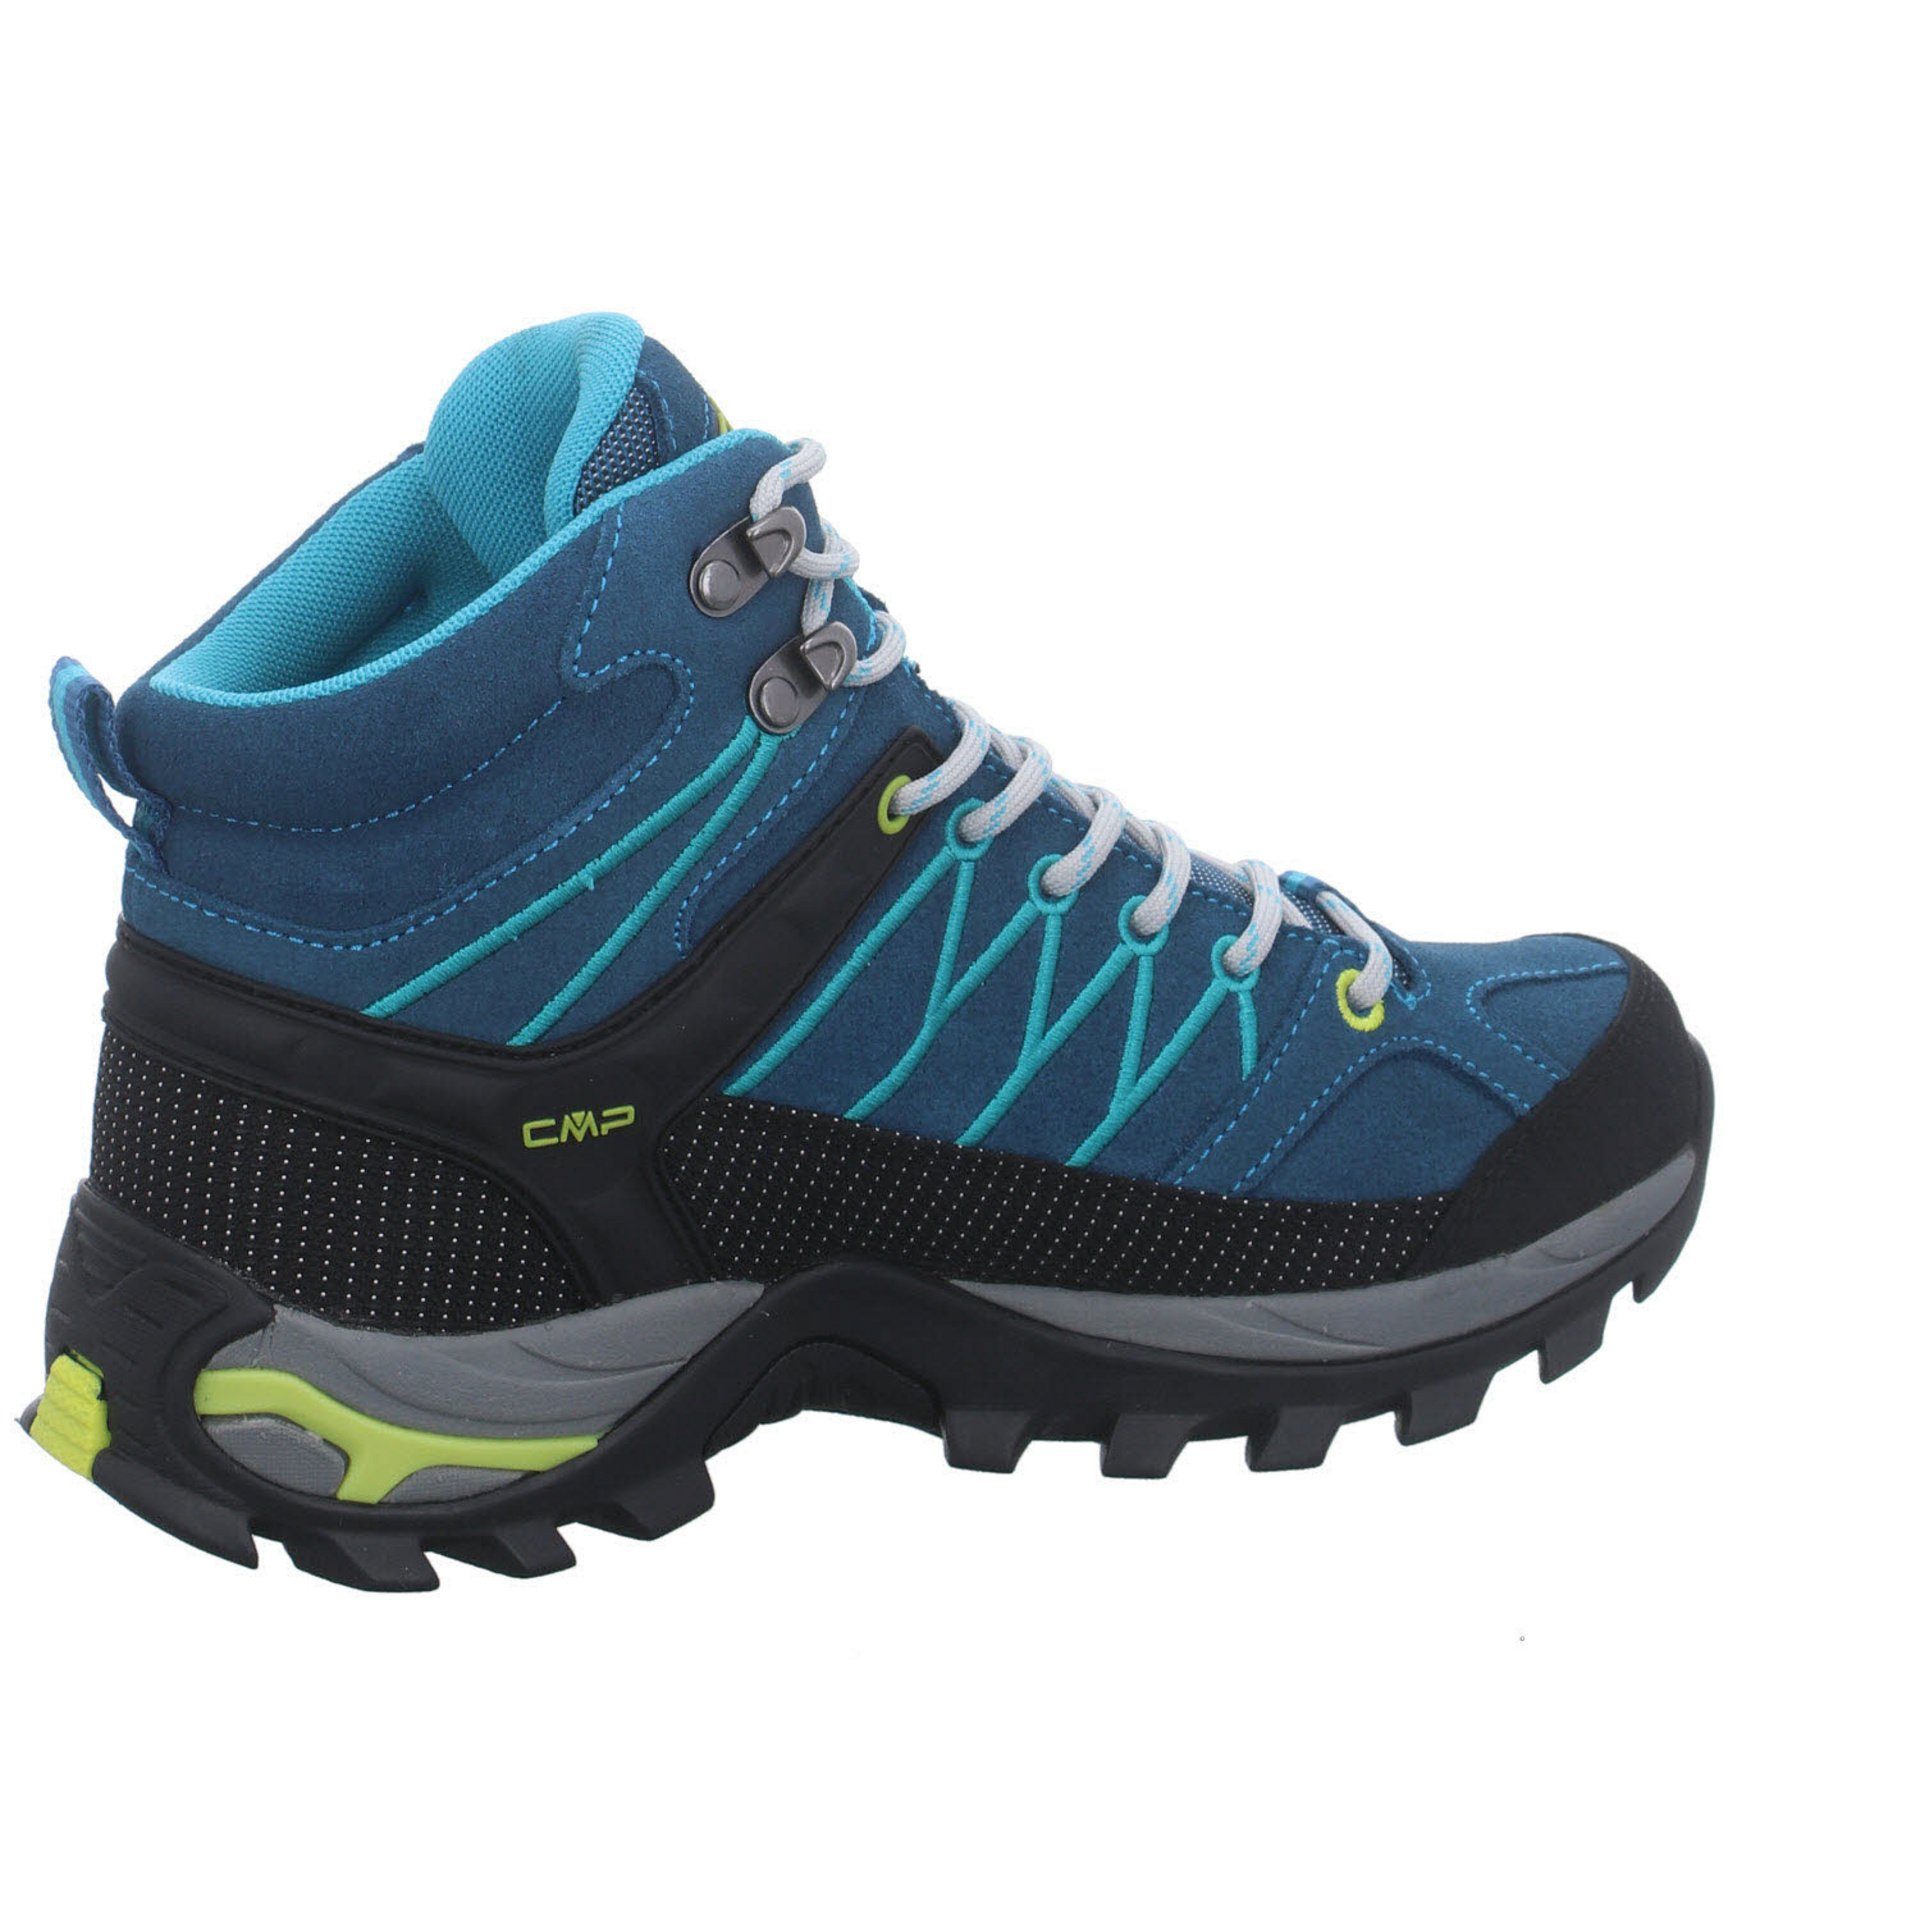 Outdoorschuh Outdoor Schuhe DEEP Damen Mid Leder-/Textilkombination Rigel CMP LAKE-BALTIC Outdoorschuh